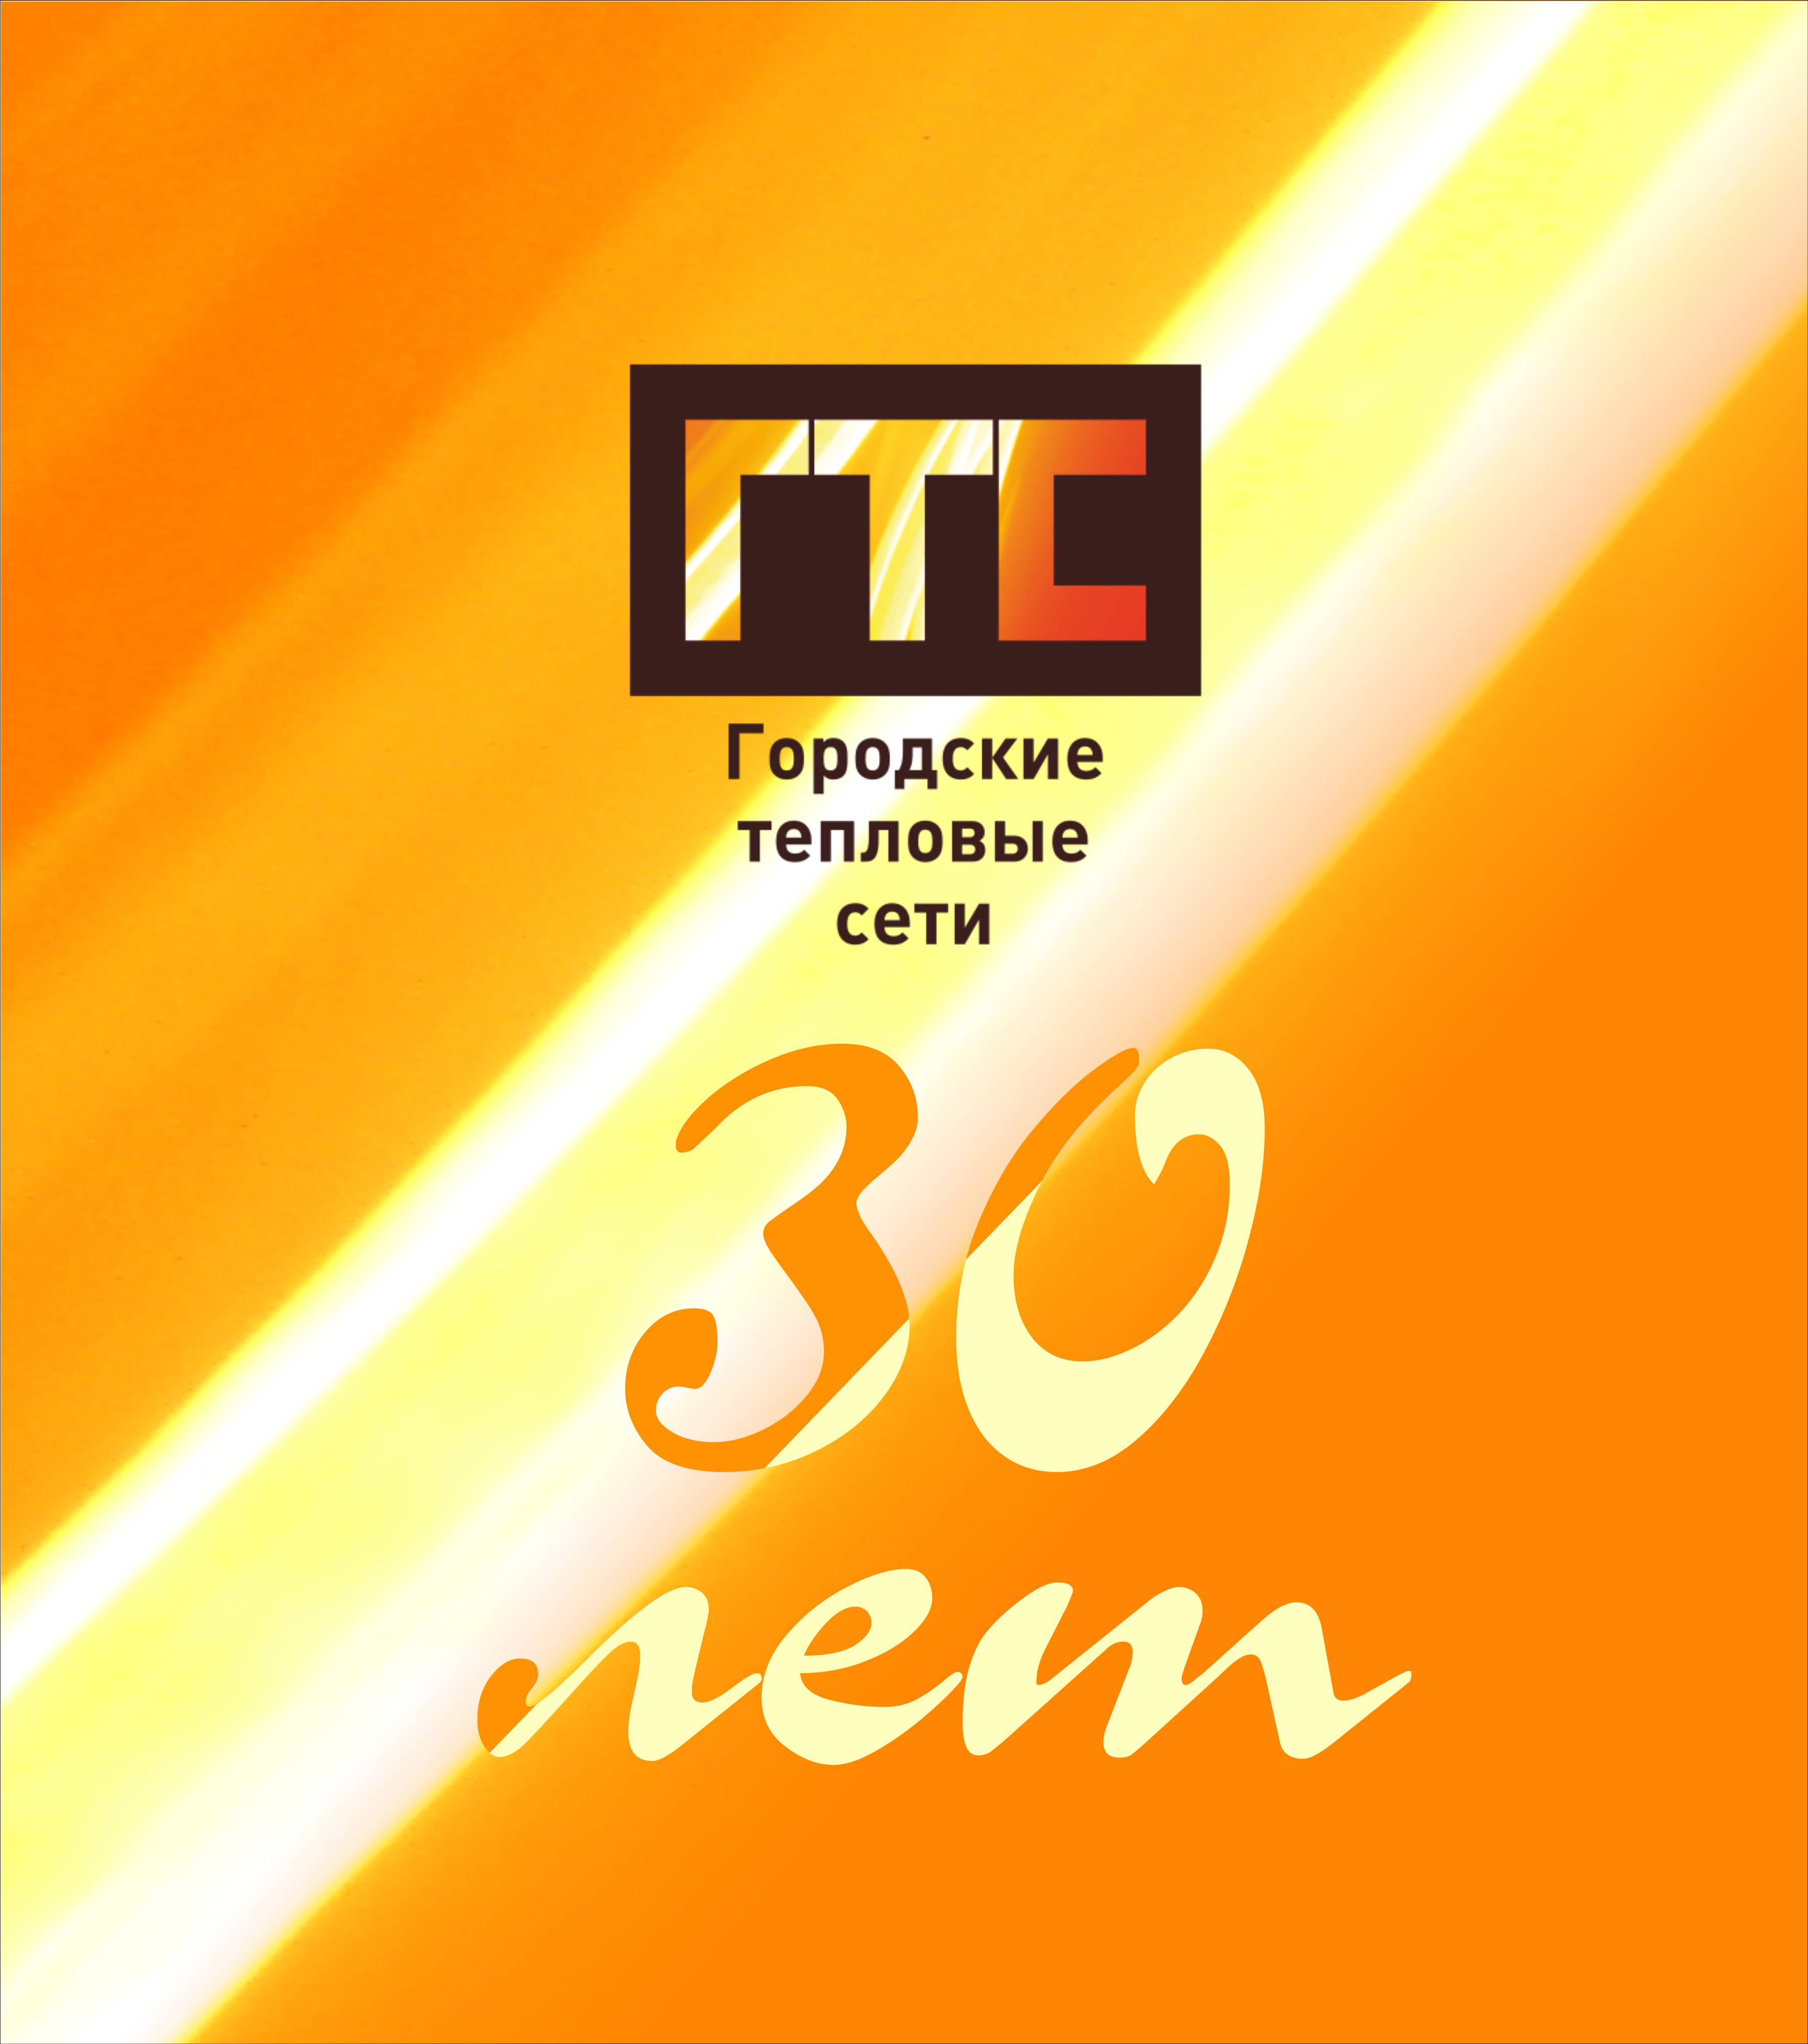 10 февраля сургутское городское муниципальное унитарное предприятие «Городские тепловые сети» отмечает 30-летний юбилей